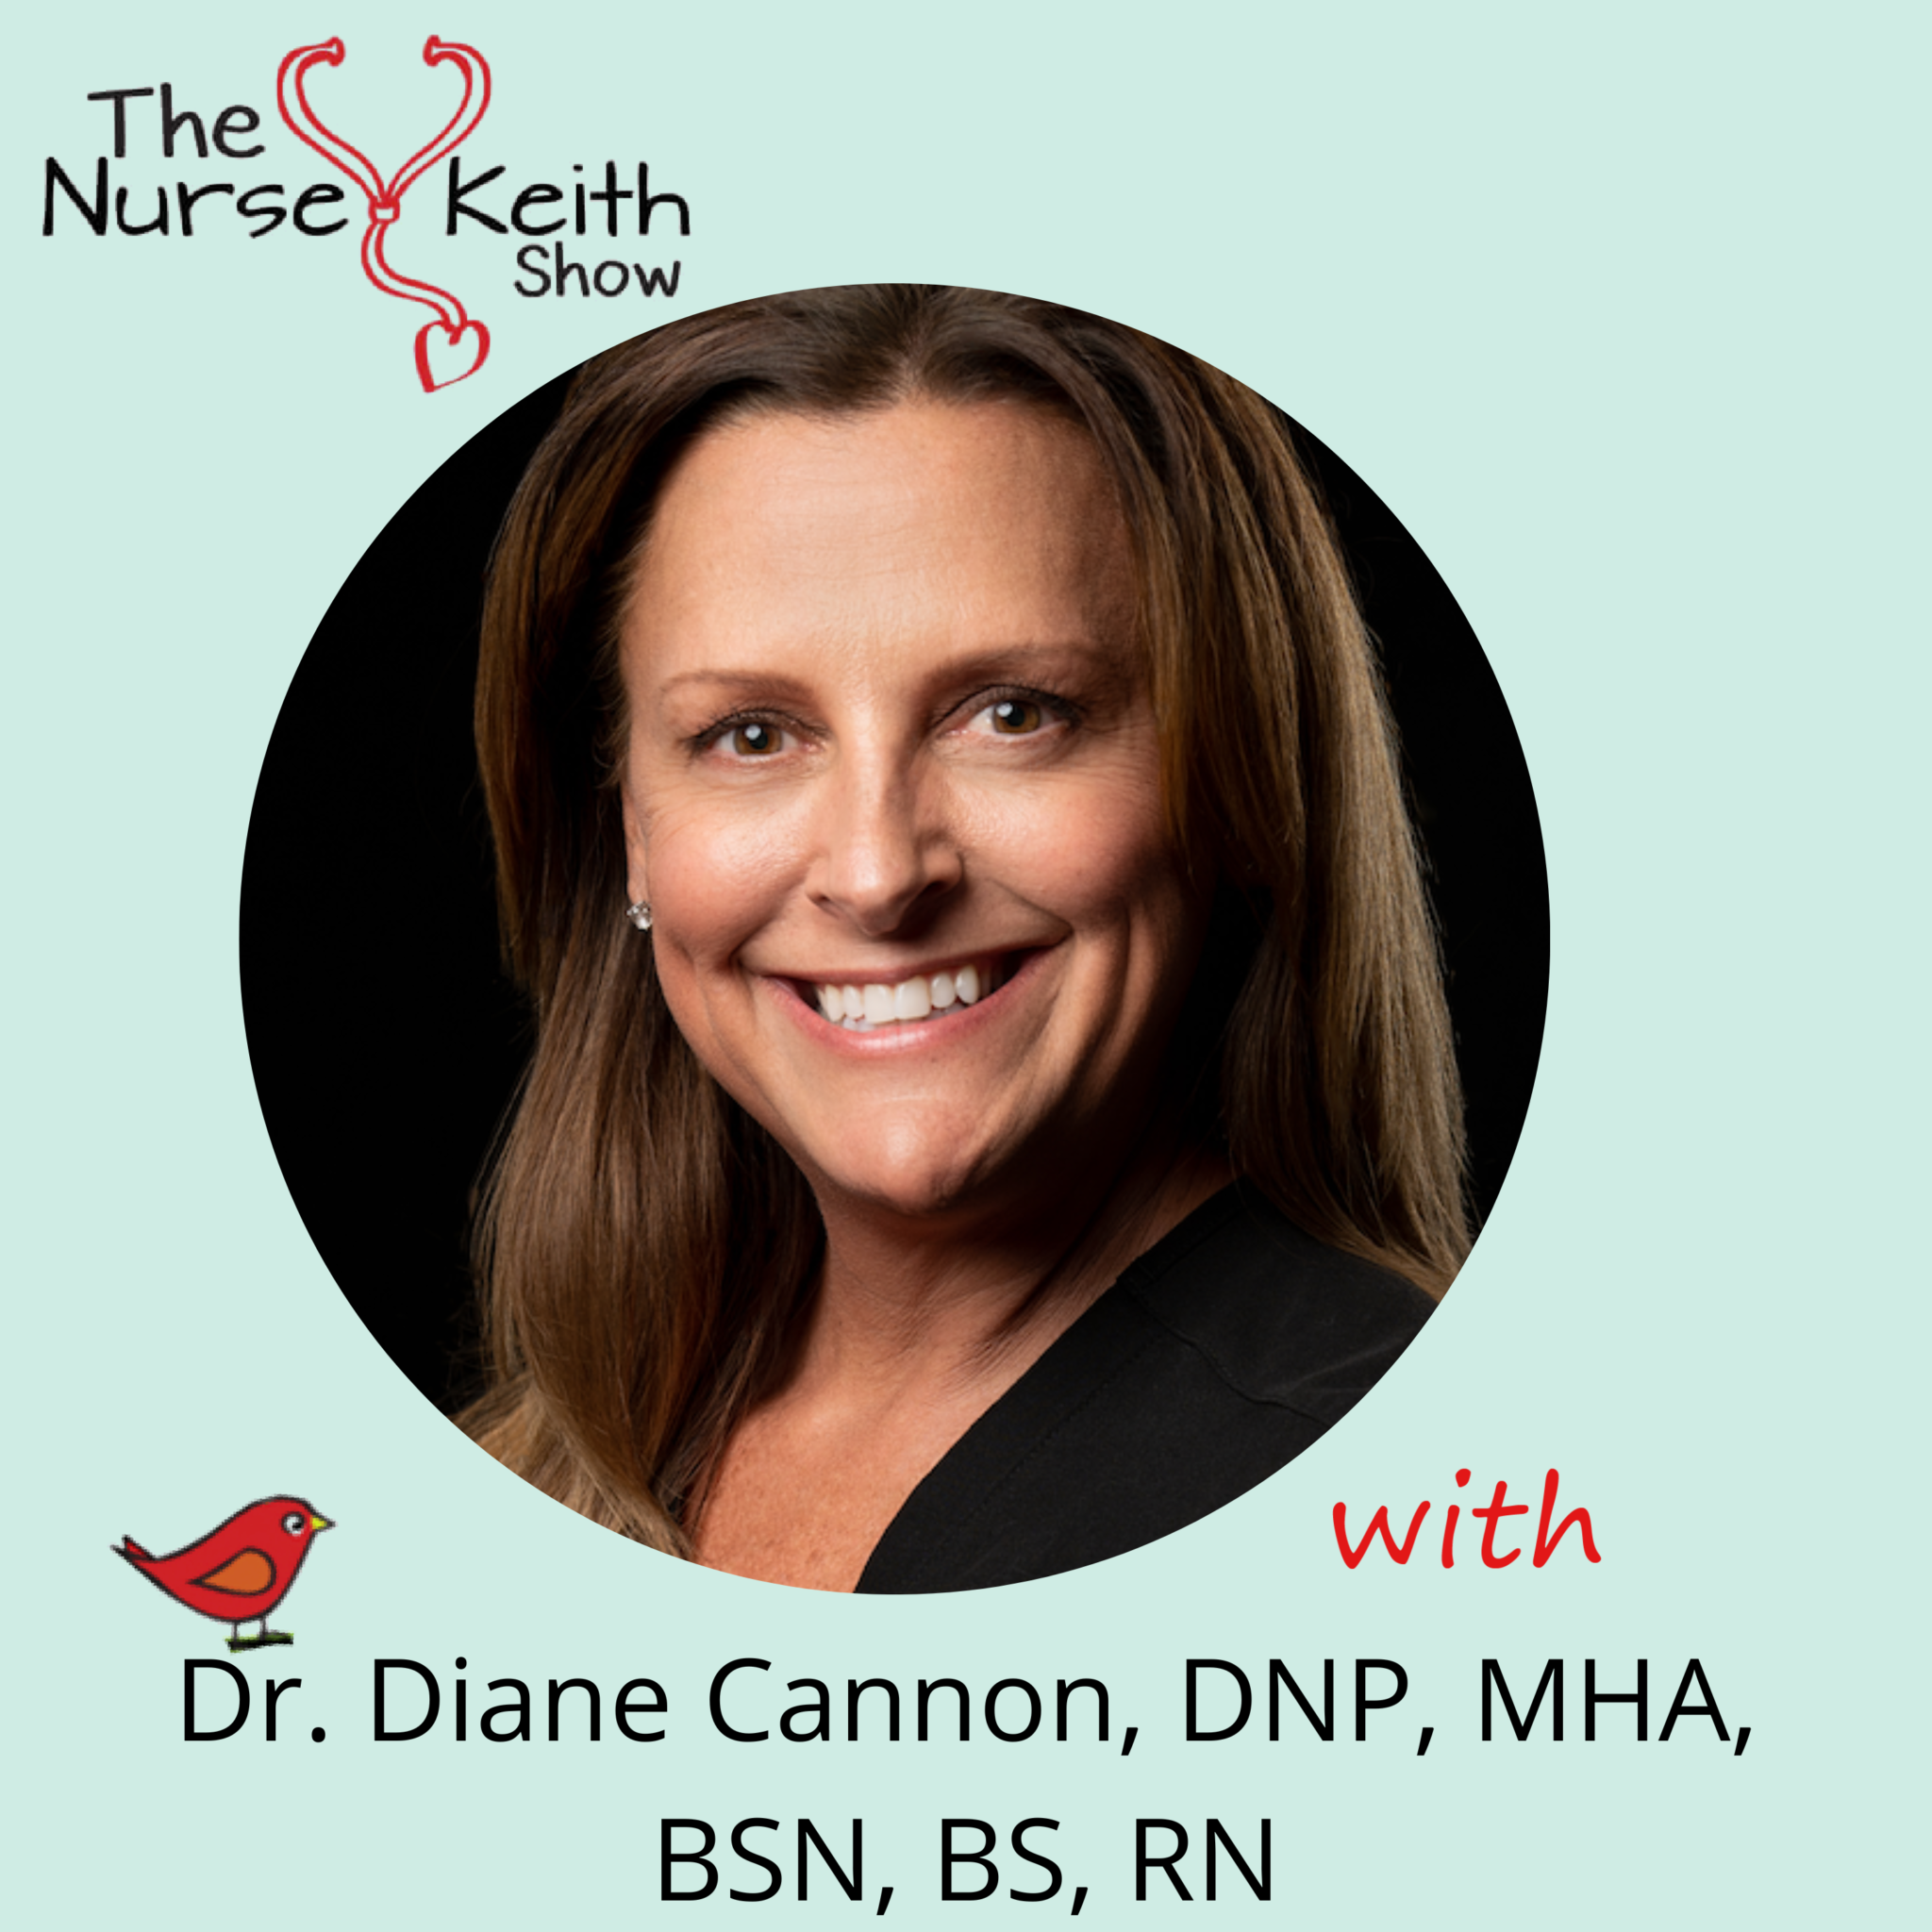 Dr. Diane Canoon, DNP, MHA, BSN, BS, RN